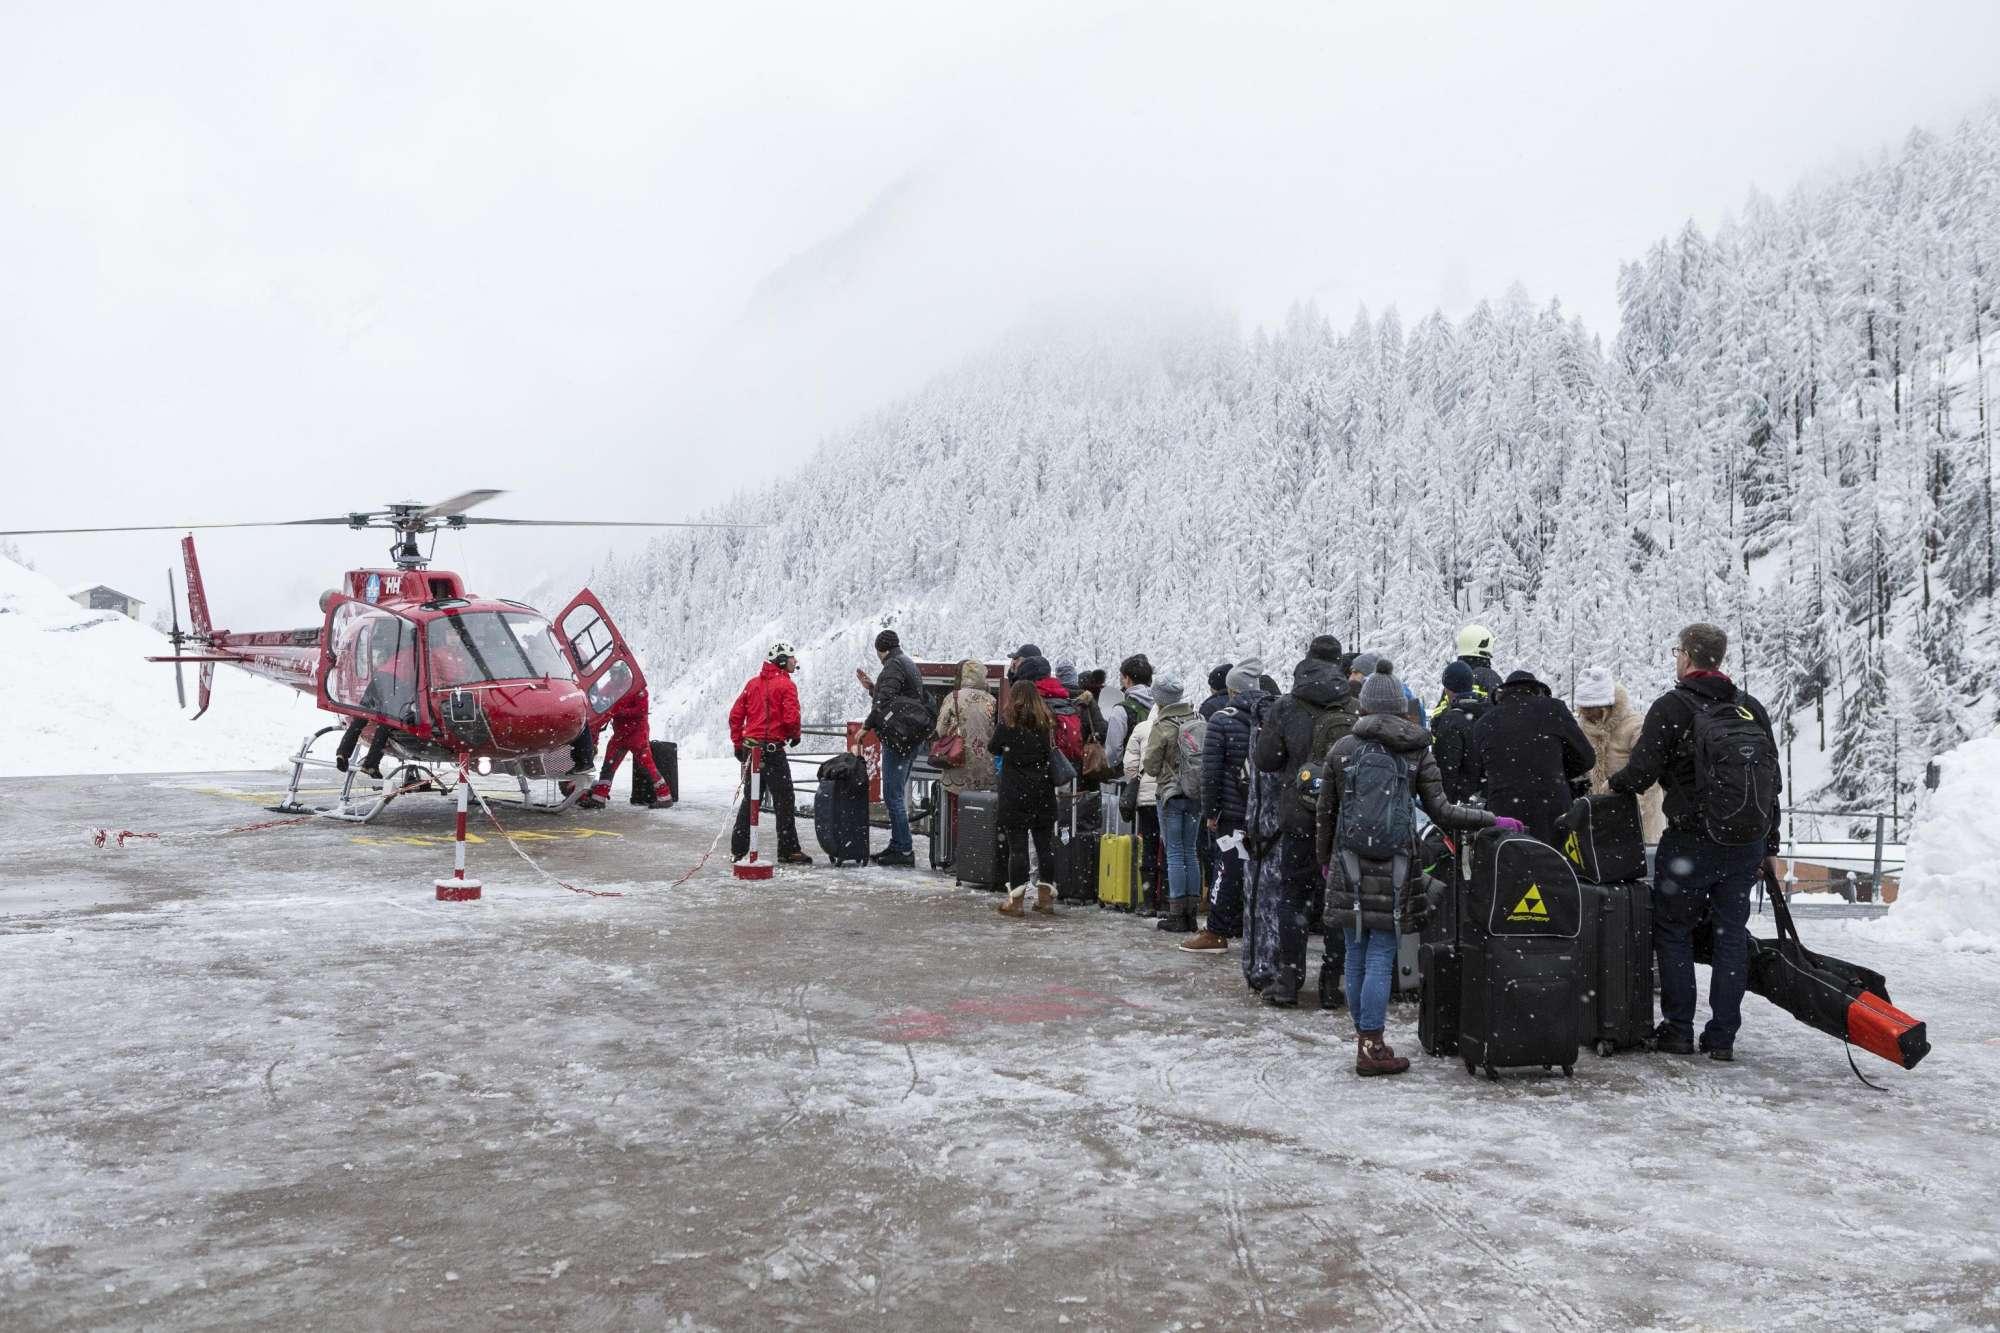 Tragedia della neve in Svizzera, 5 alpinisti perdono la vita: 4 sono italiani